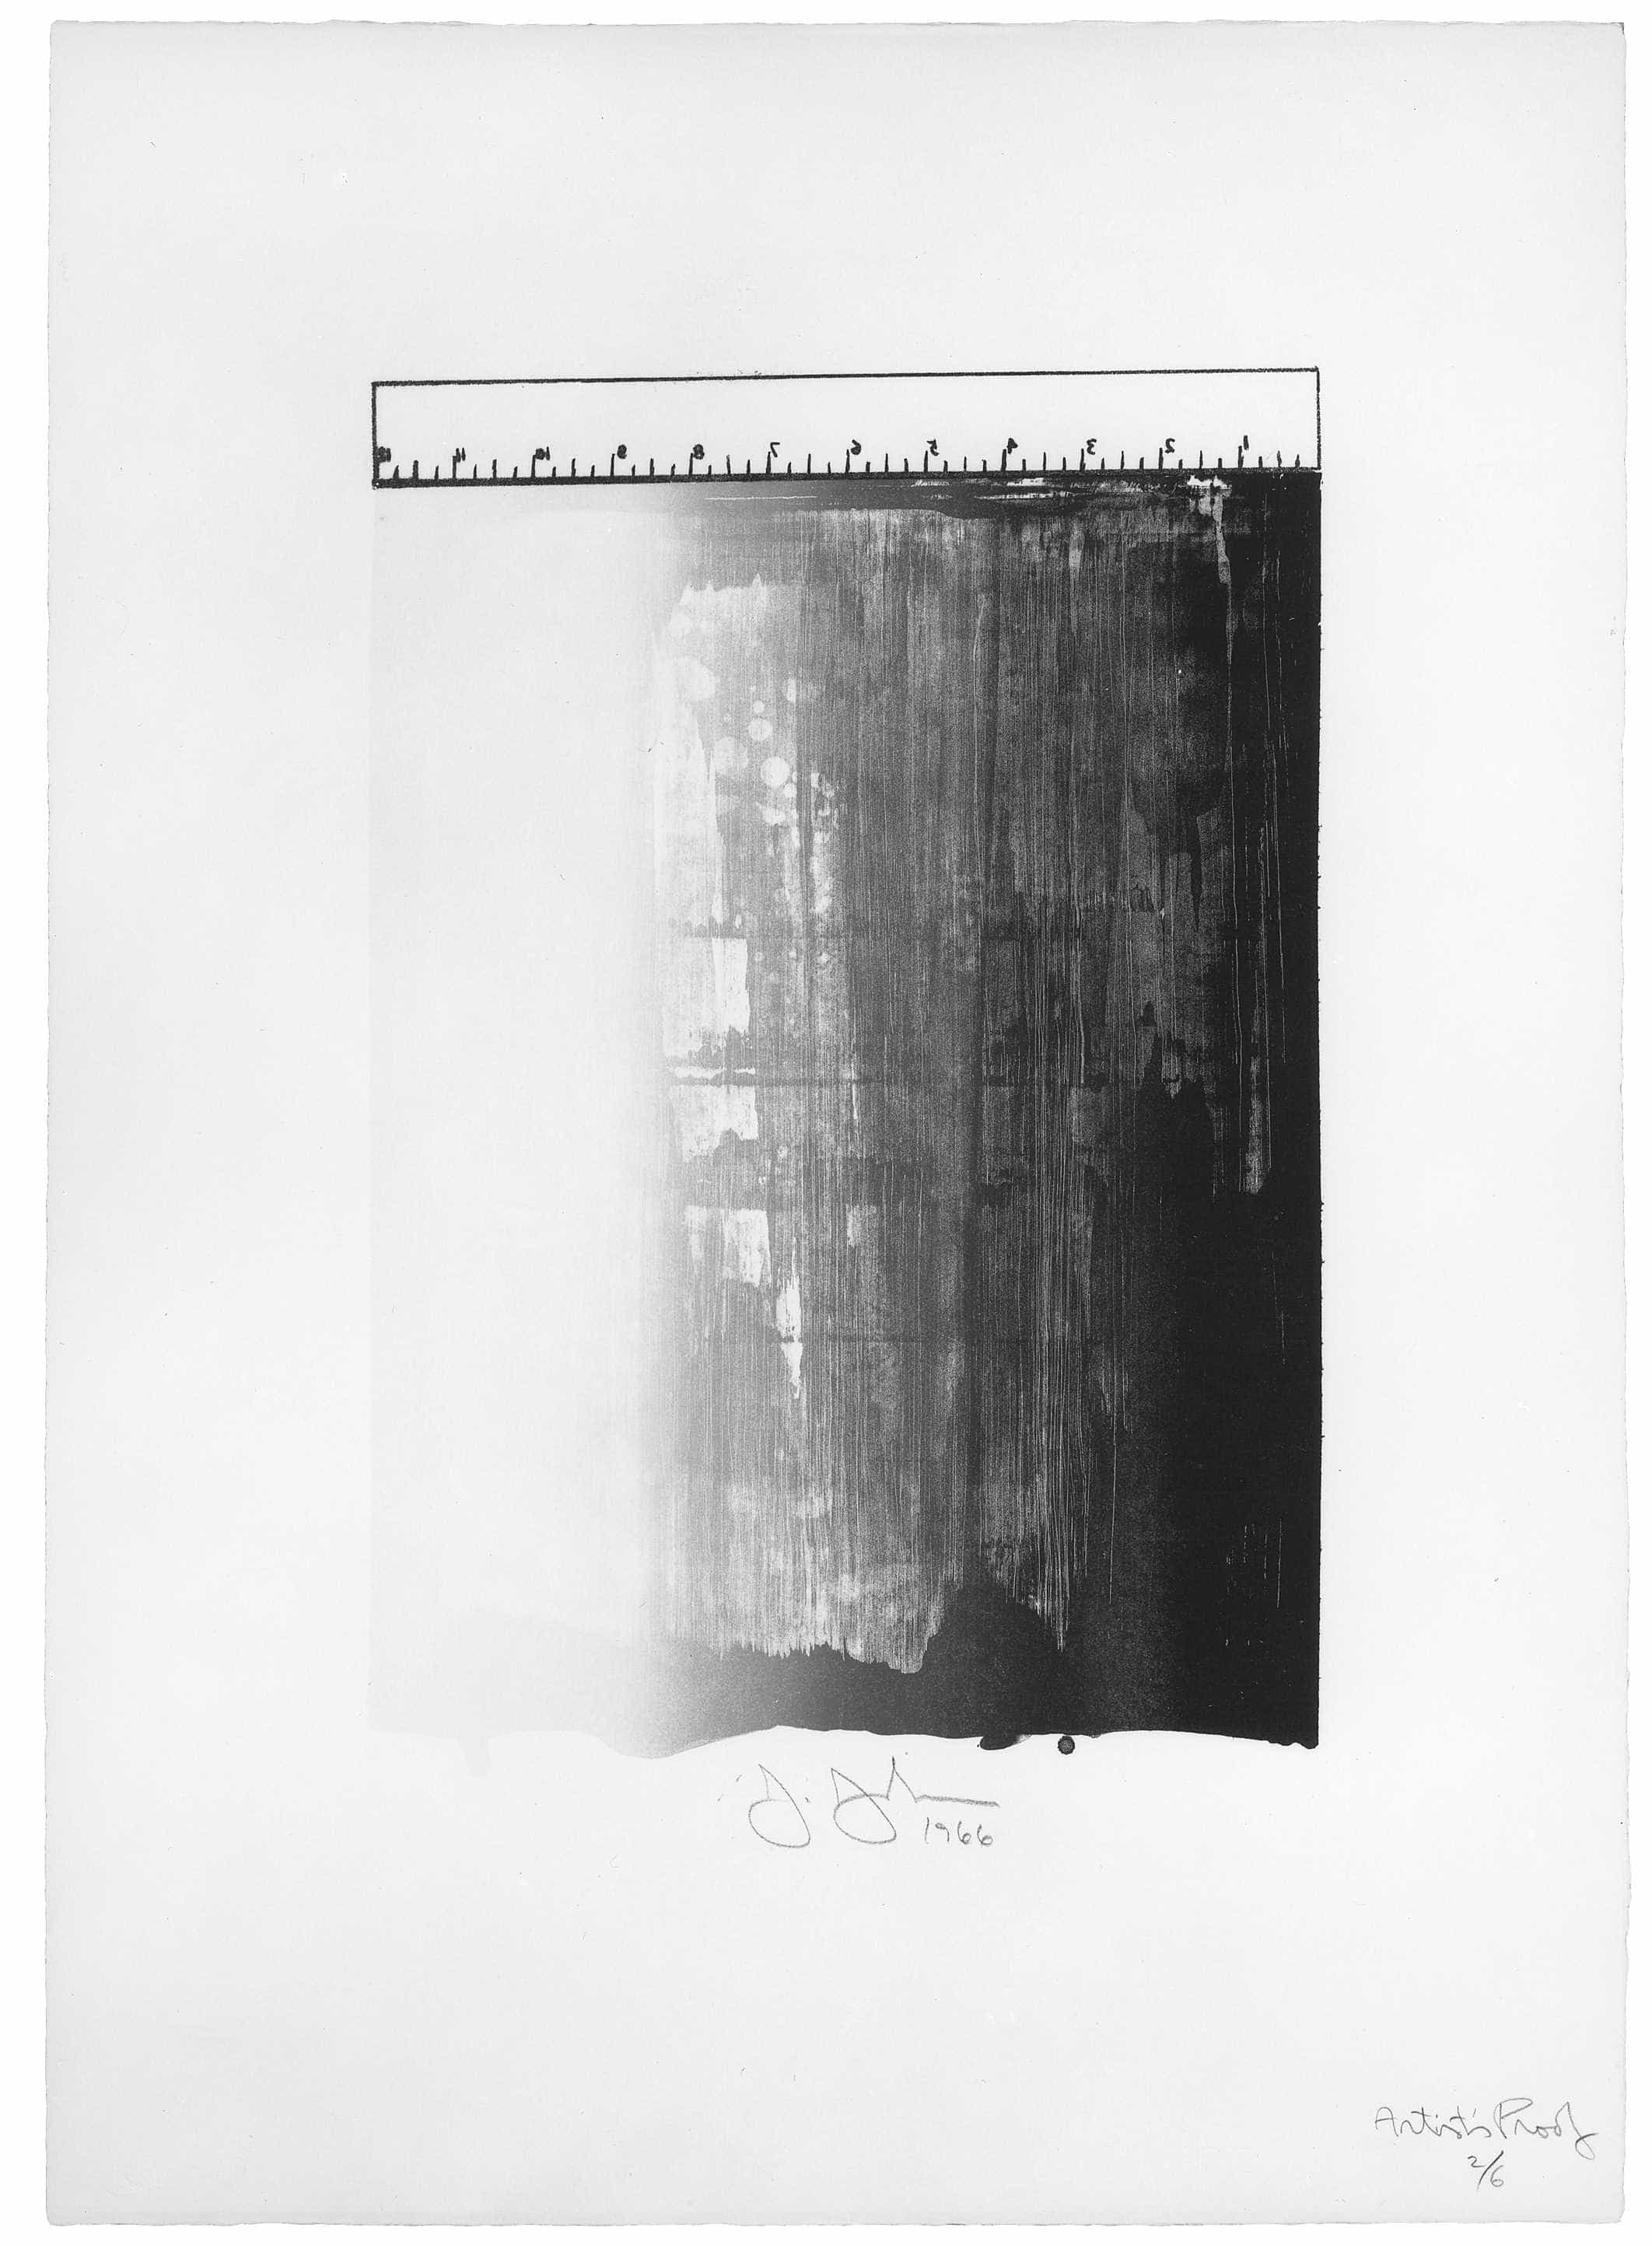 Jasper Johns, Ruler, 1966